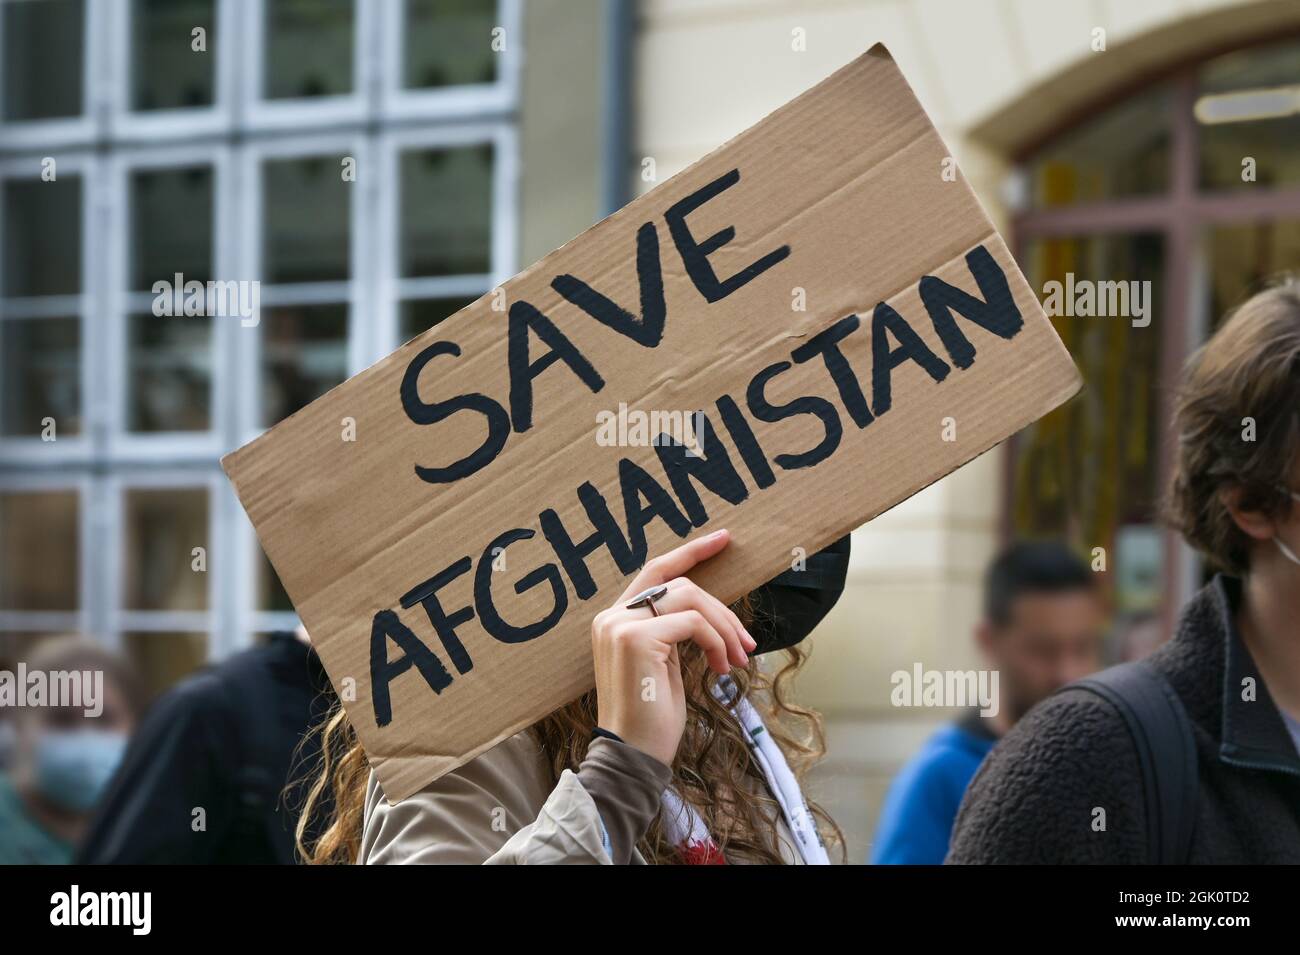 Una activista que tenía un cartel con texto Safe Afghanistan en una manifestación en Lubeck, Alemania después de la toma de posesión de los talibanes, seleccionó el foco Foto de stock